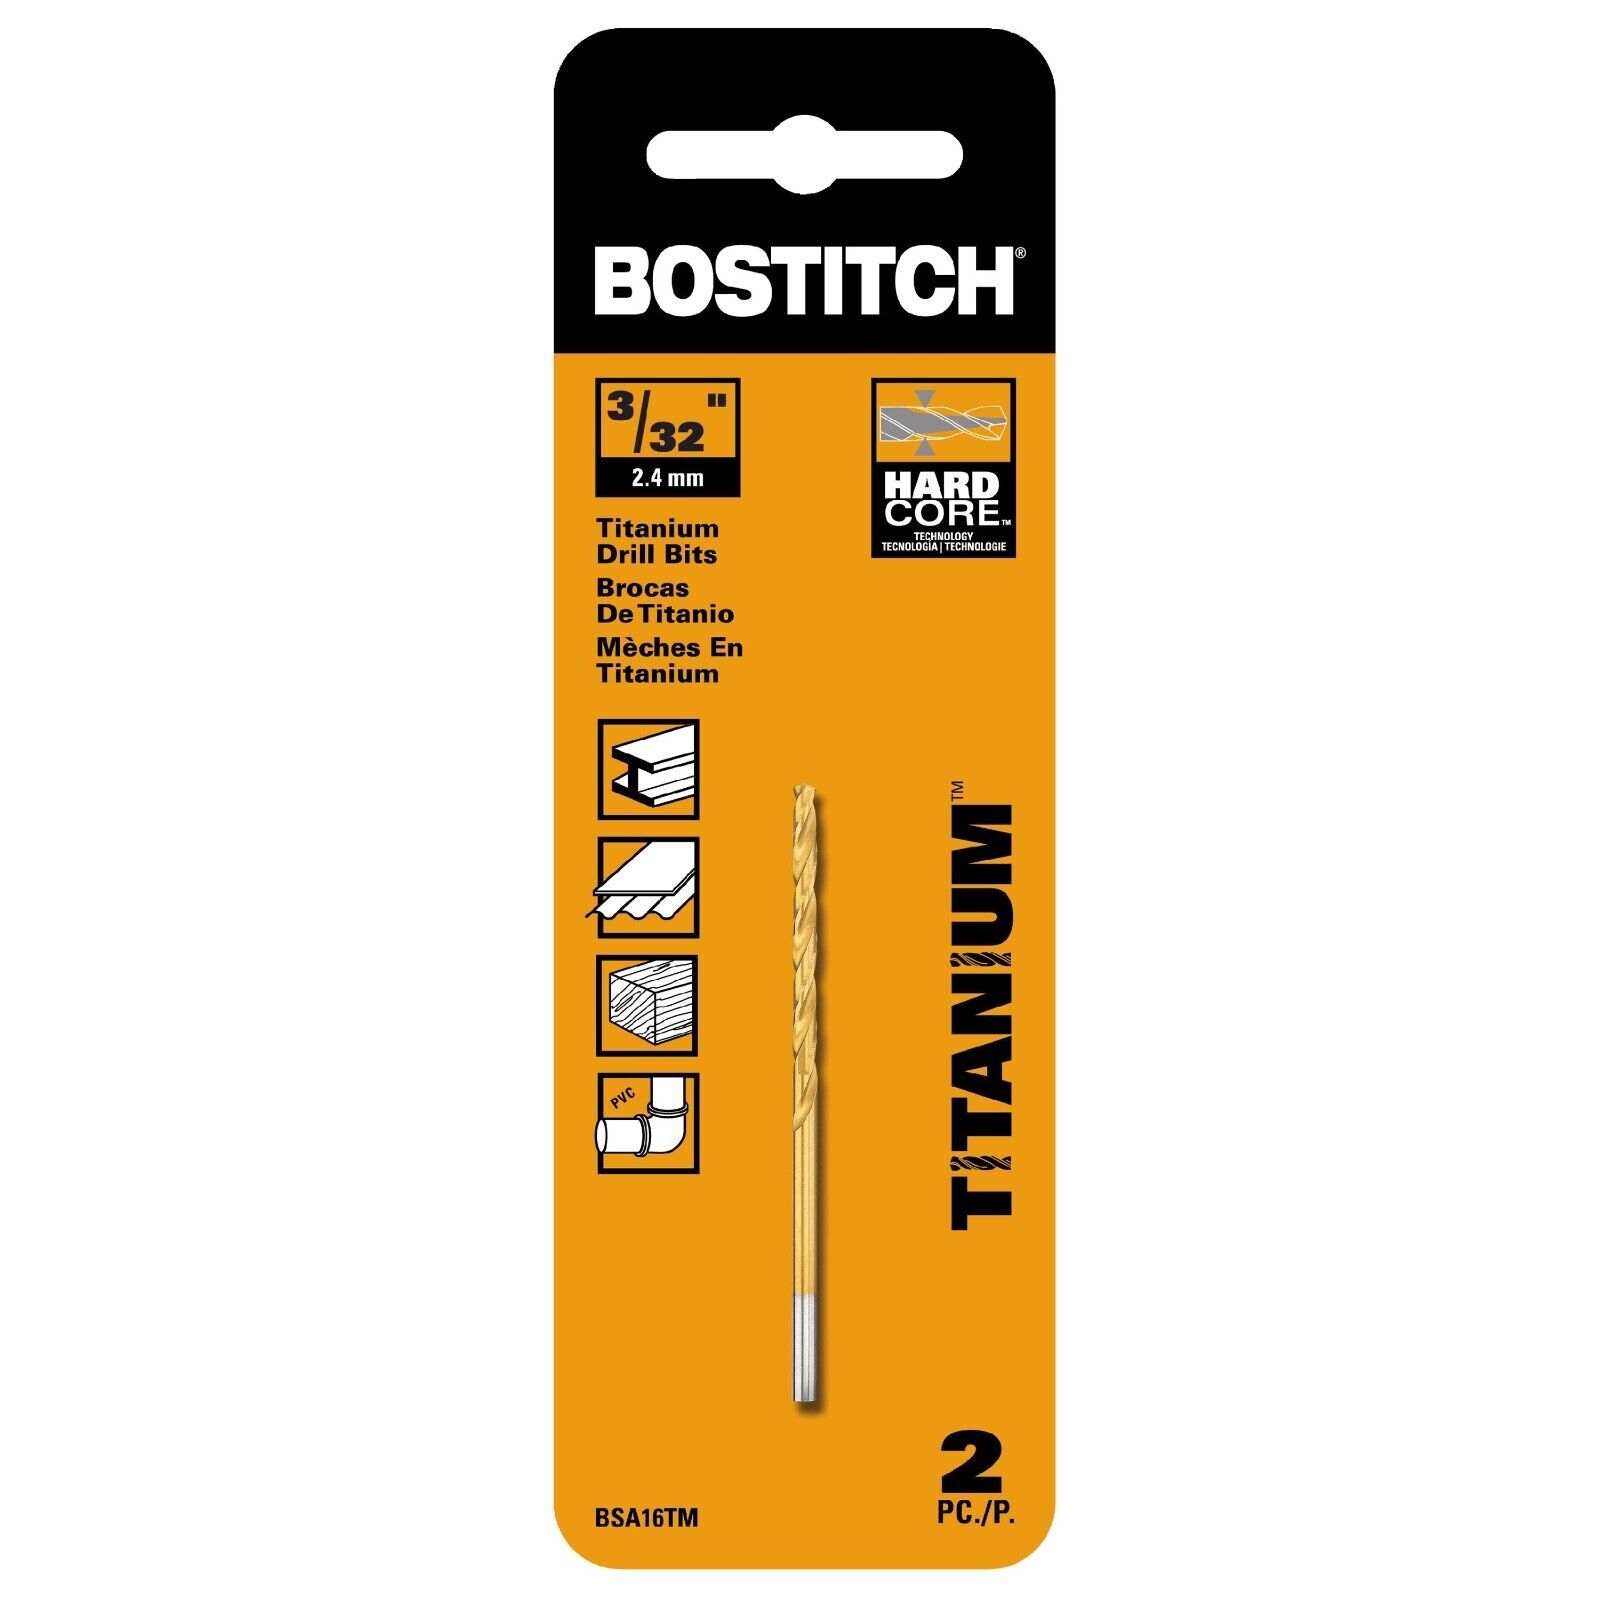 Bostitch Titanium Drill Bits, 3/32" 2.4mm, 2 Pack, BSA16TM, Wood & PVC - $6.59